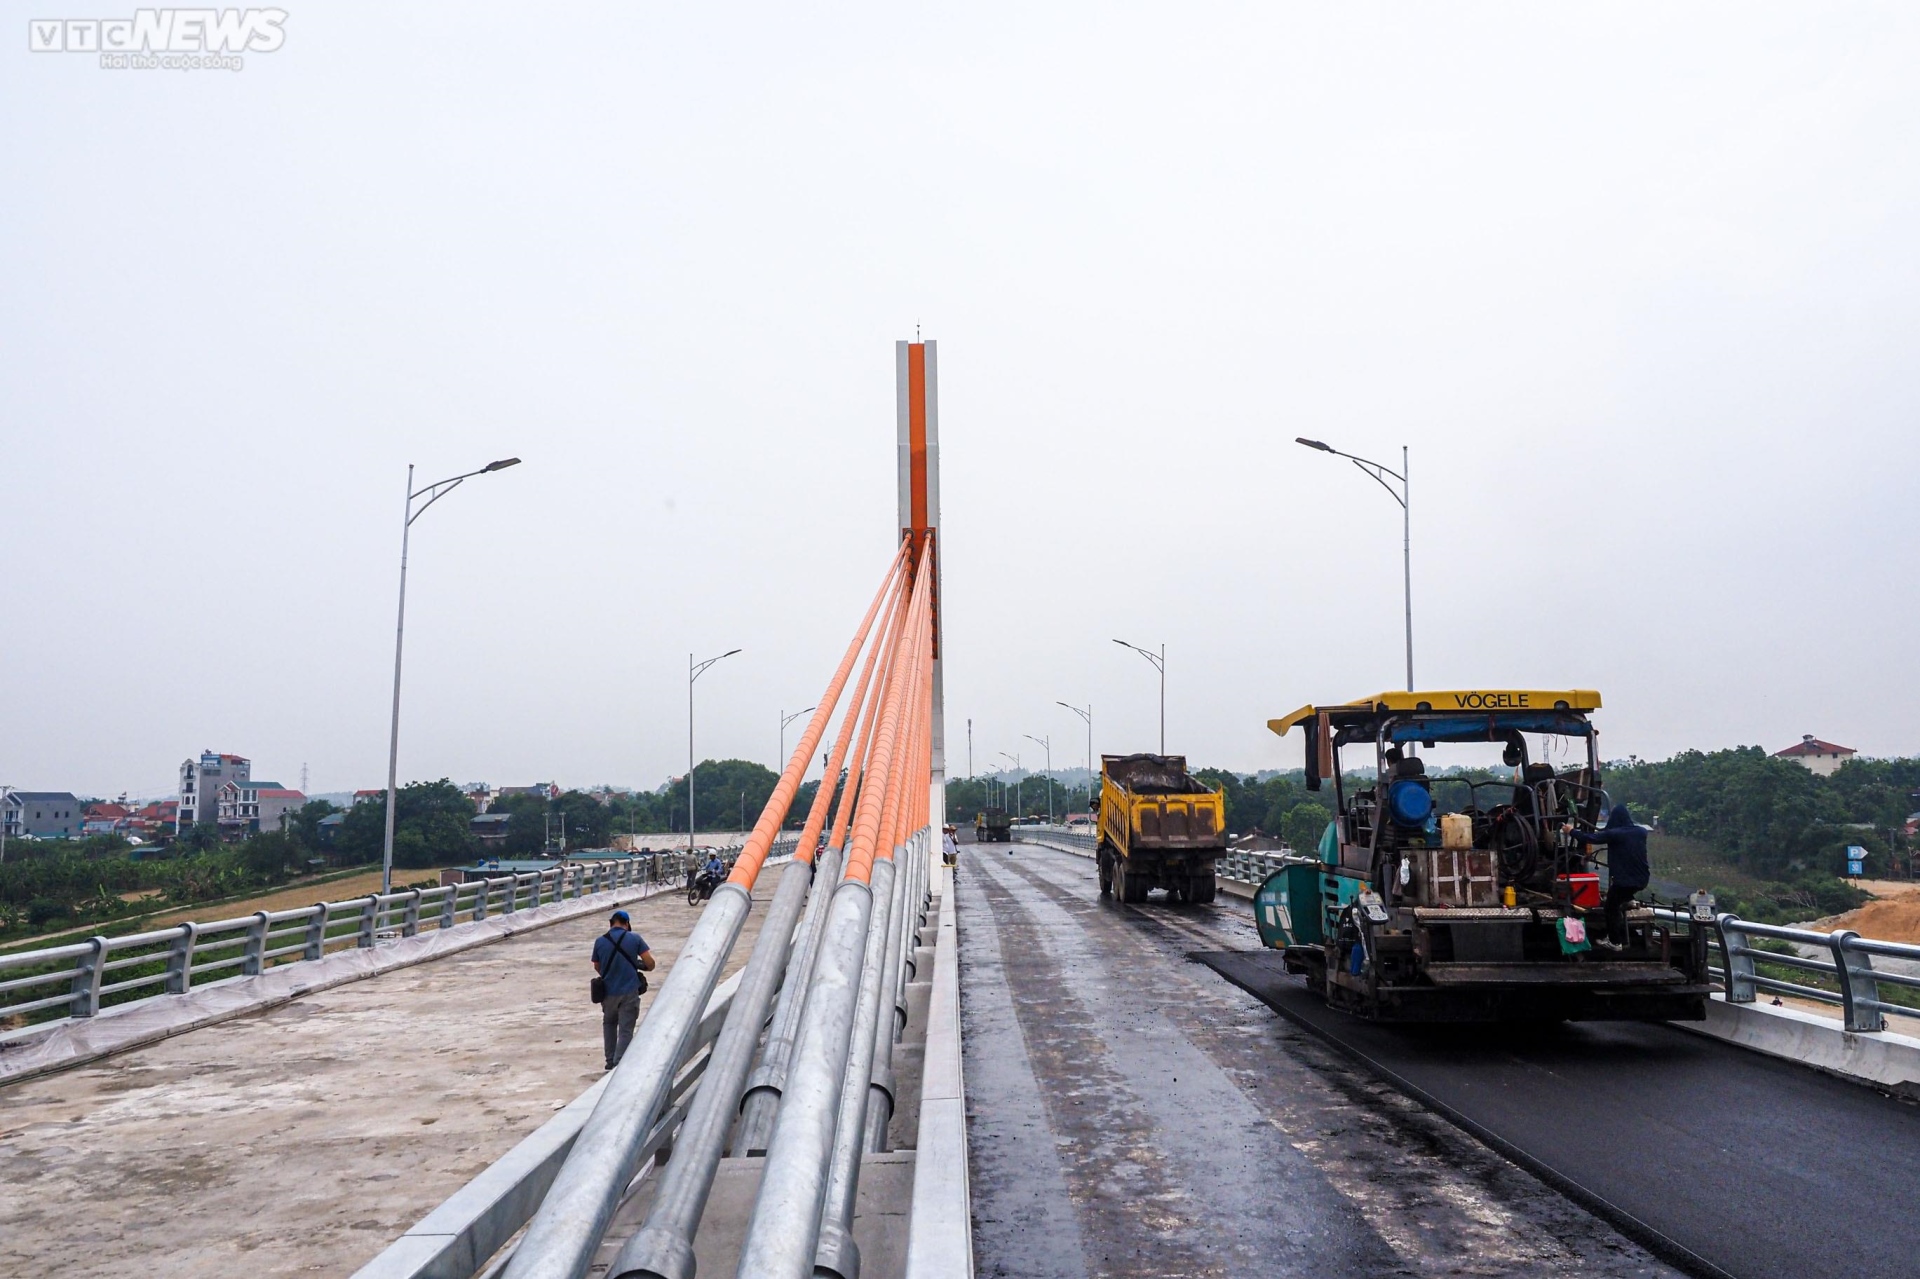 Chiêm ngưỡng cây cầu 540 tỷ đồng nối 2 tỉnh Vĩnh Phúc và Phú Thọ - Ảnh 10.